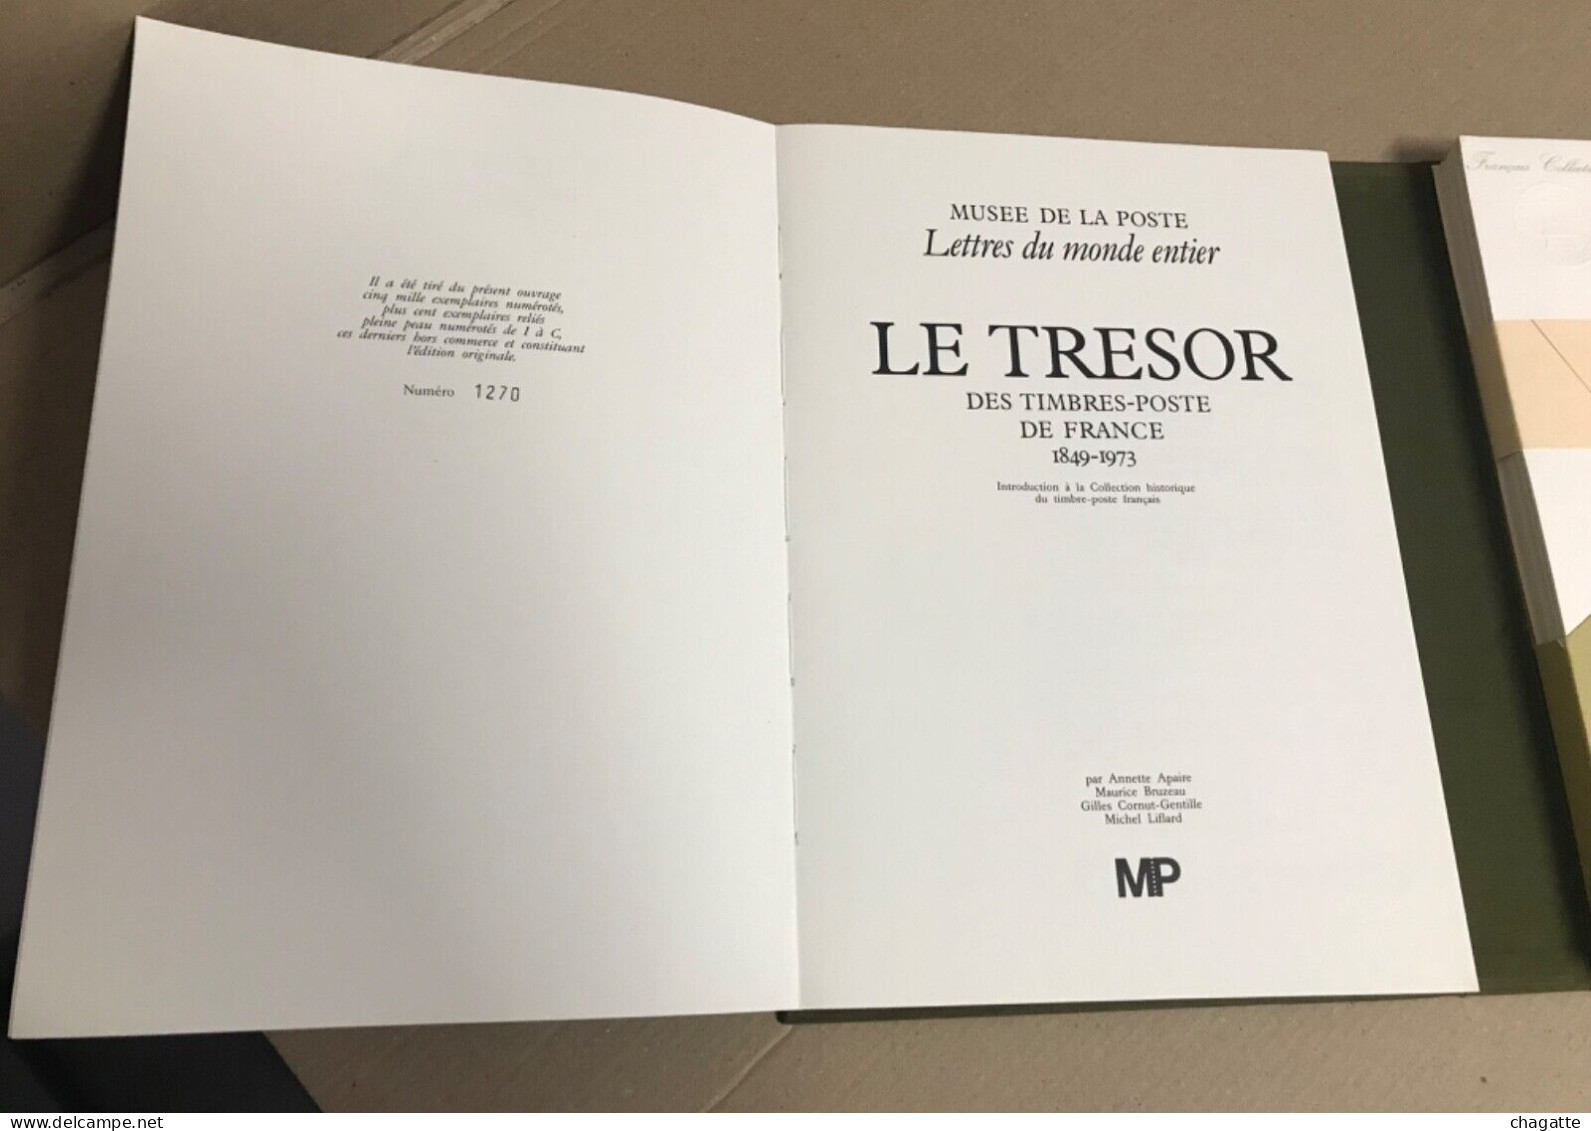 Livre Le Tresor Des Timbres Poste 1849-1873 Et 38 Planches Dans Son Boitier - Documents De La Poste